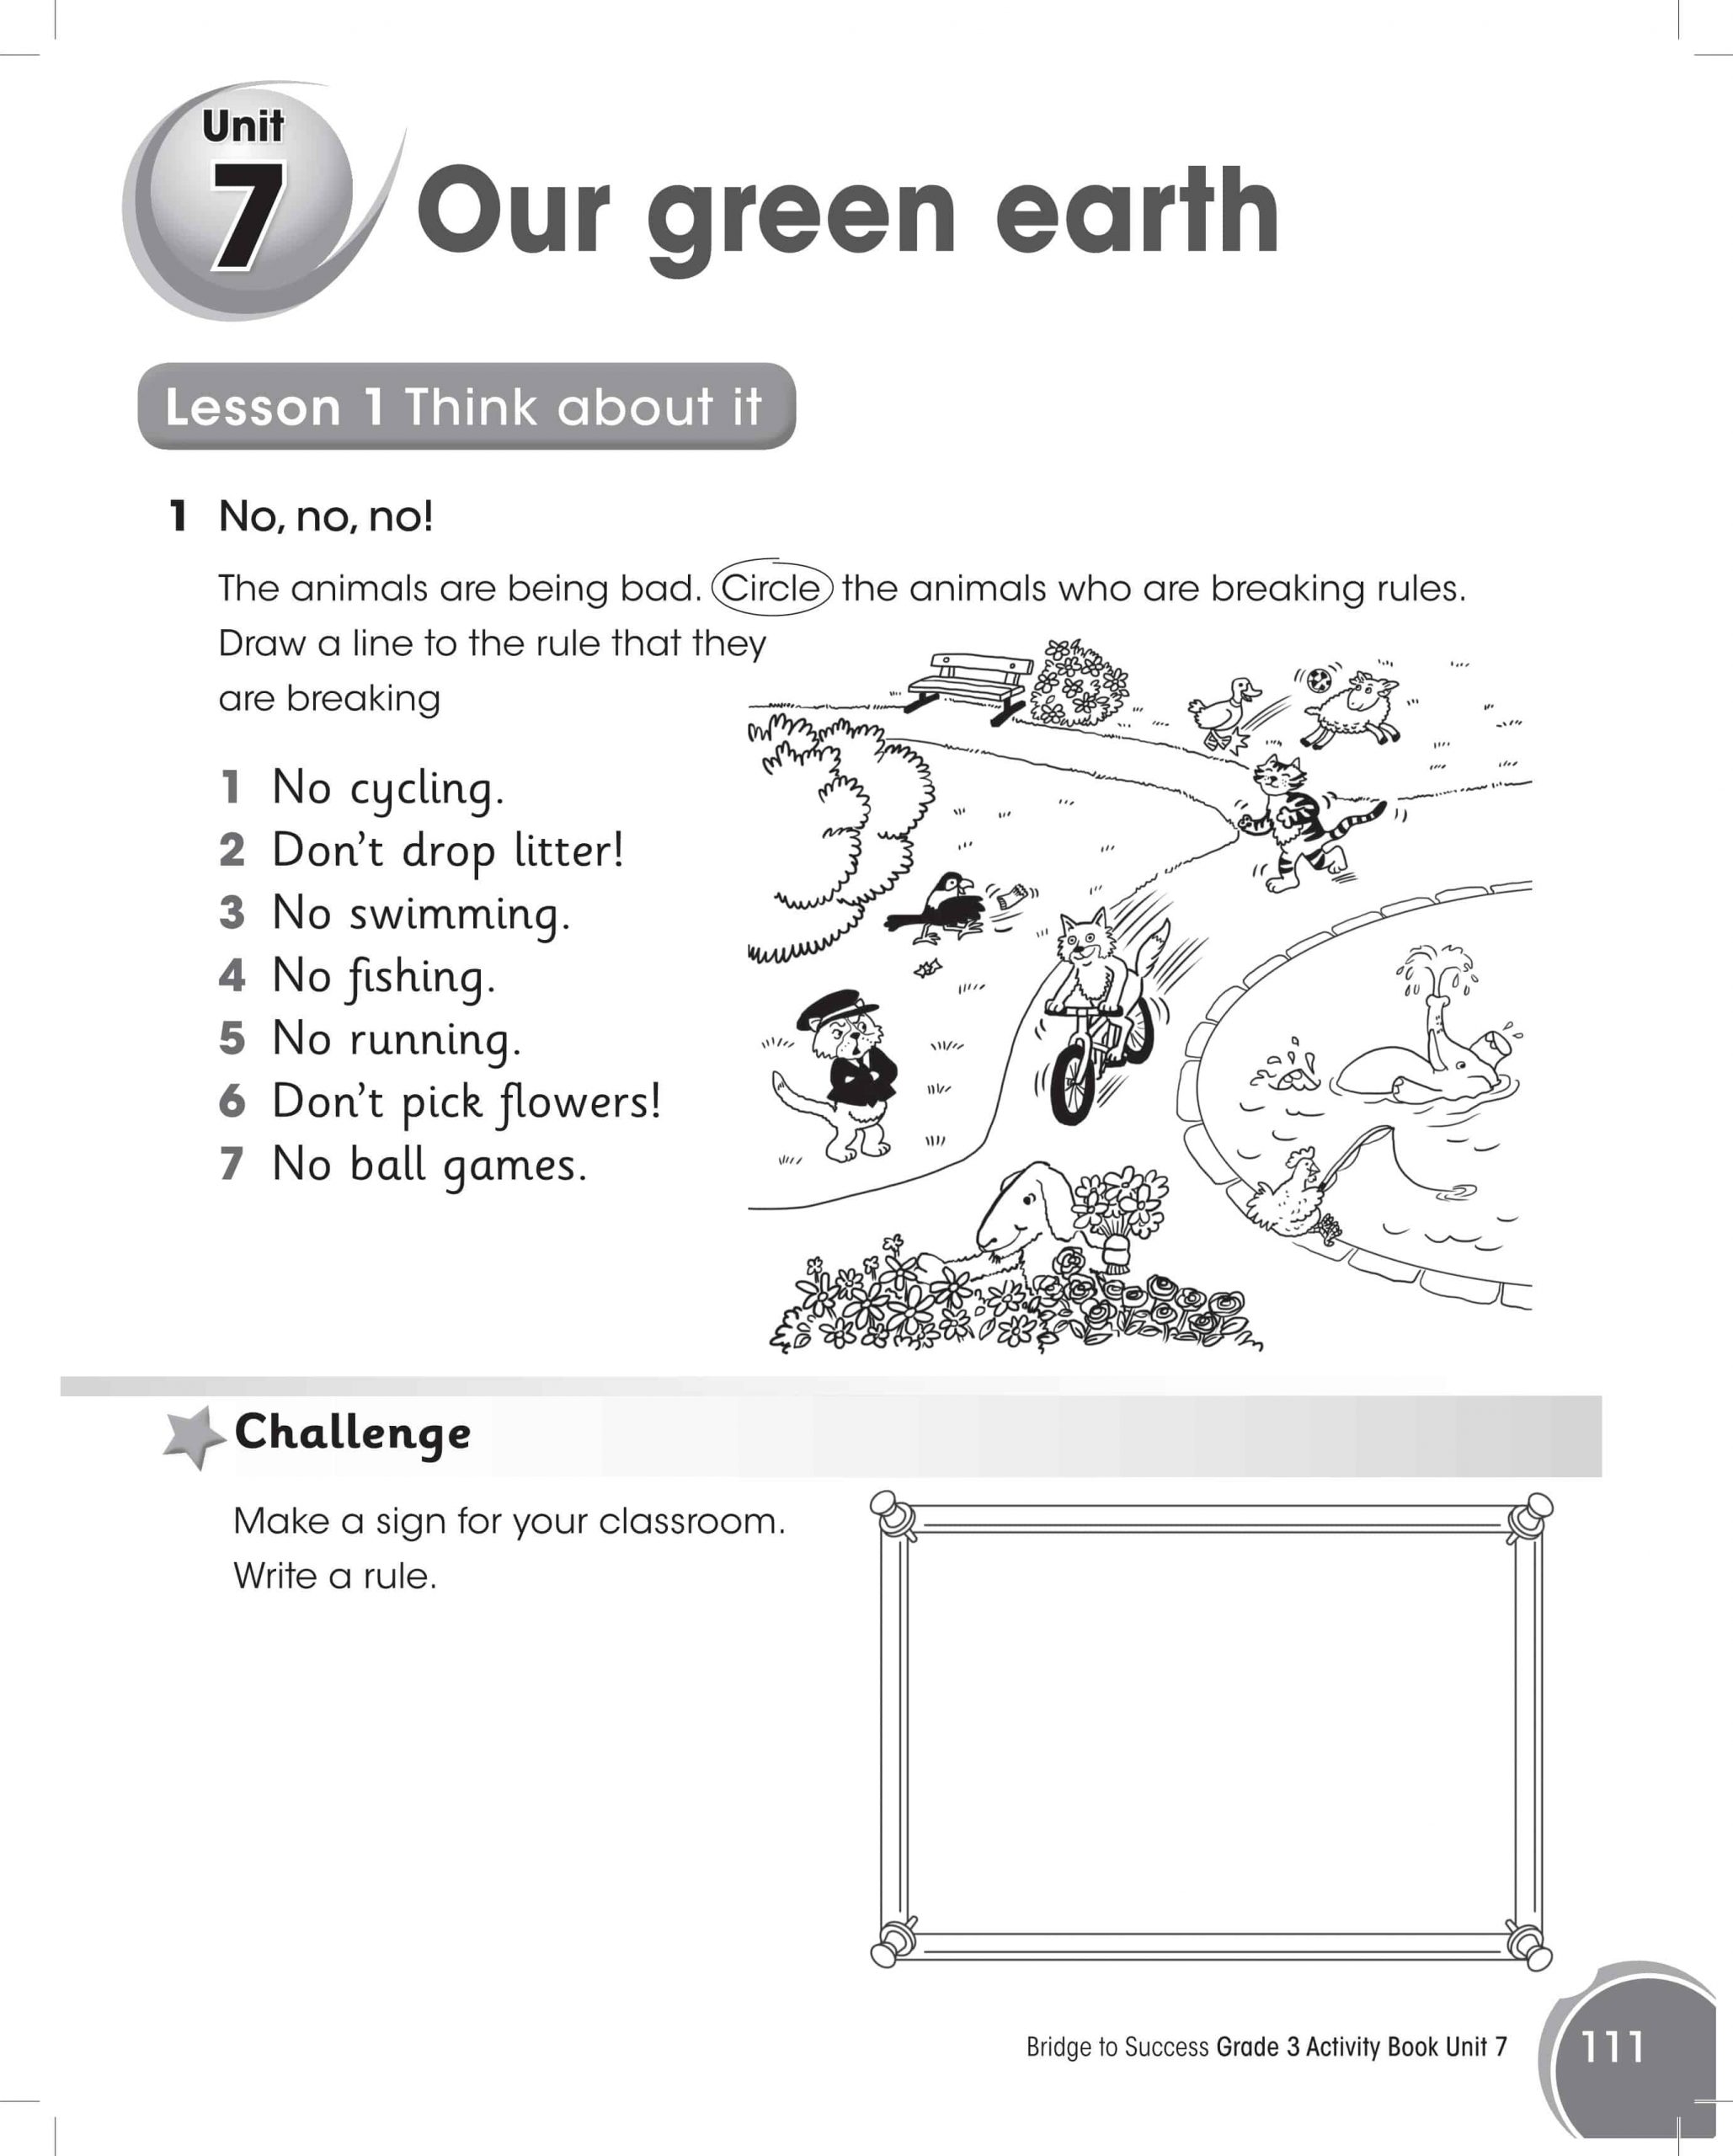 كتاب النشاط Our green earth الصف الثالث مادة اللغة الانجليزية 